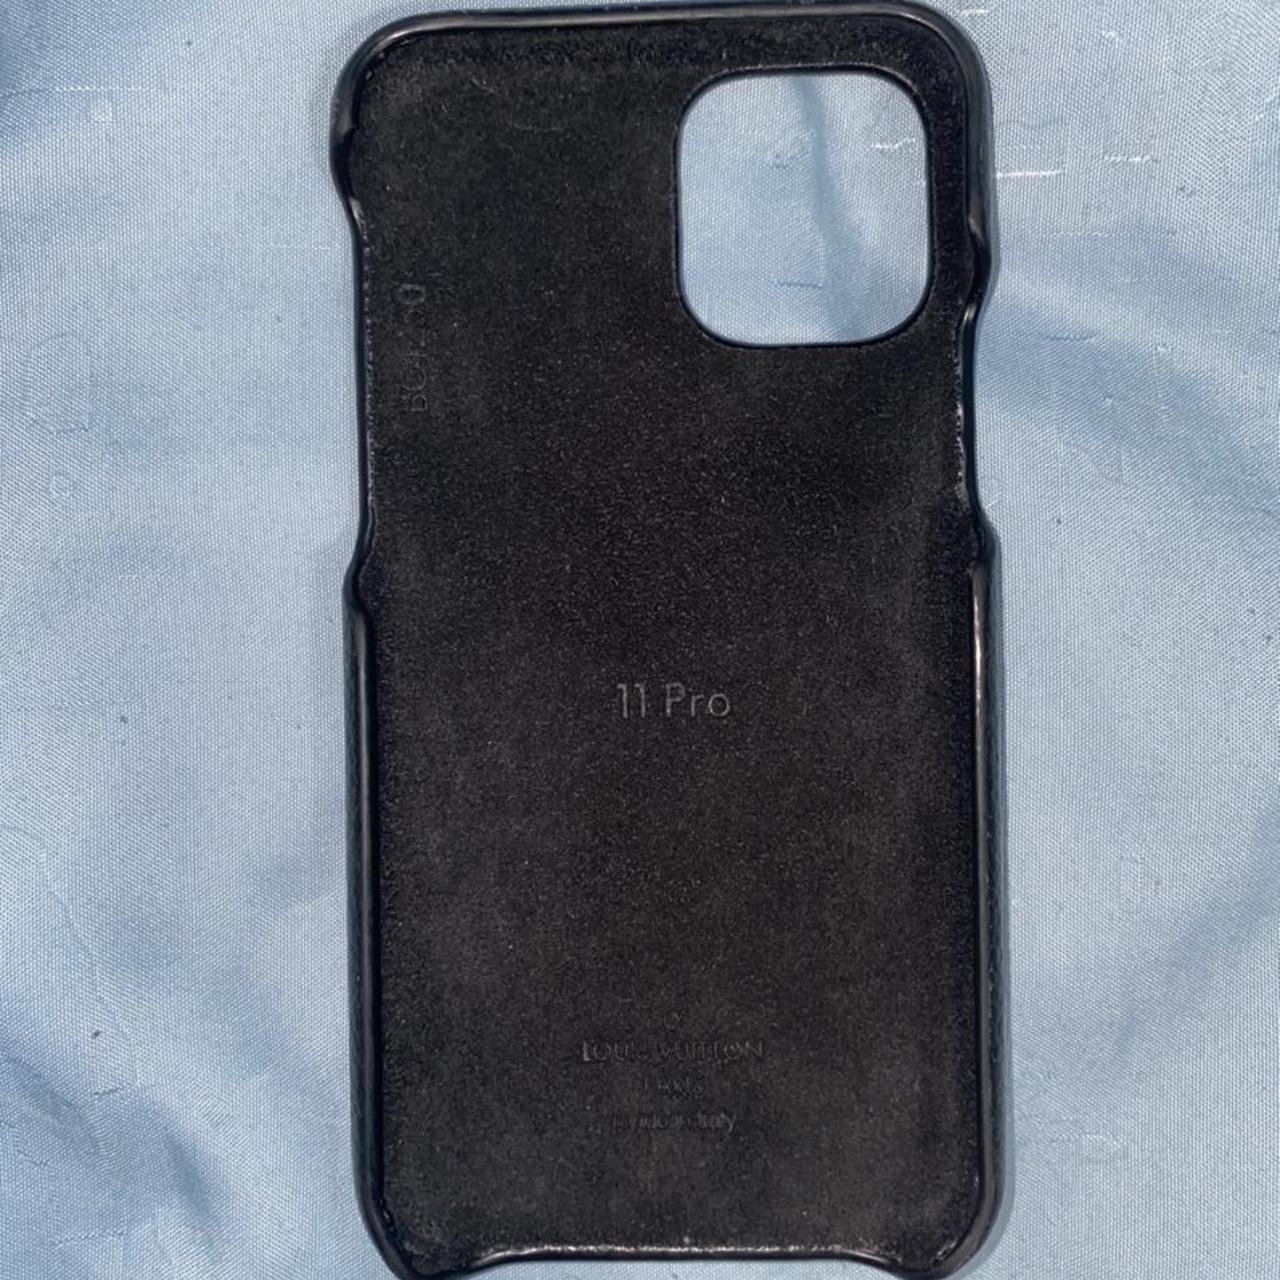 AUTHENTIC LOUIS VUITTON iPhone 11 Pro phone case - Depop